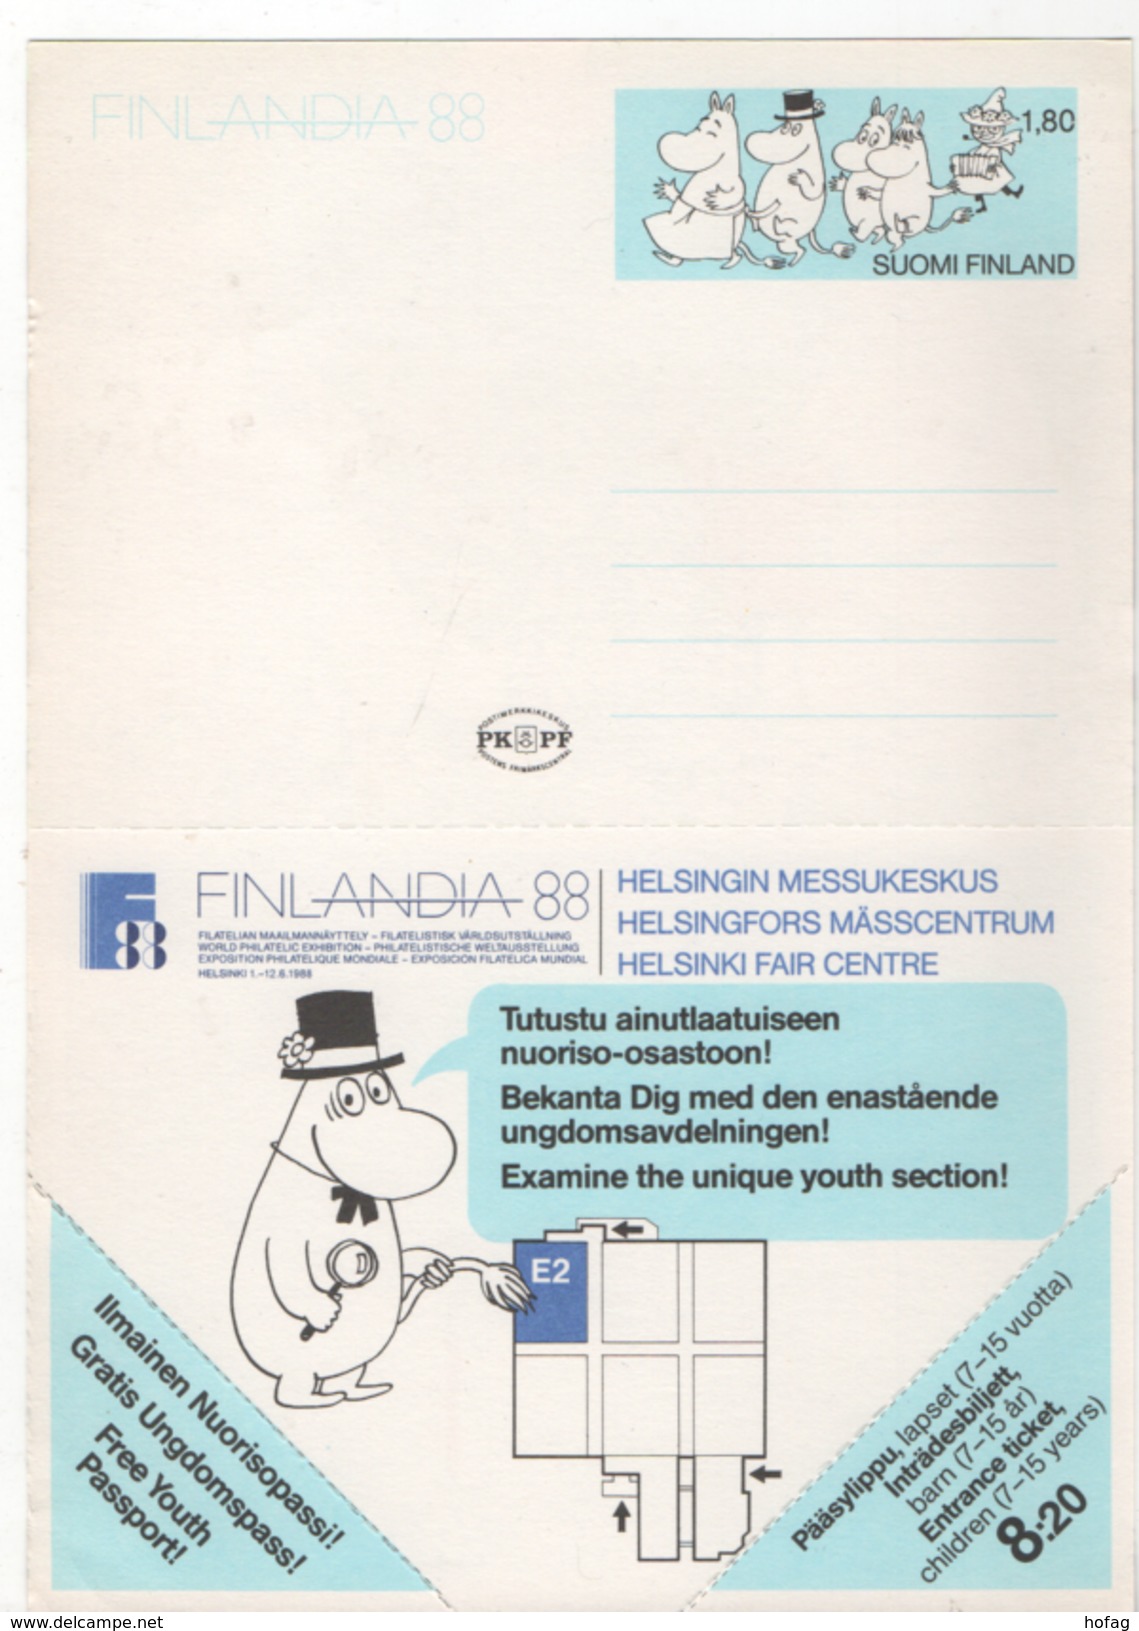 Finnland 1988 Ganzsache P162  Finlandia 88 "Moomin - Kindermesse", Ungebraucht  - Children Fair Centre Ticket MNH - Enteros Postales